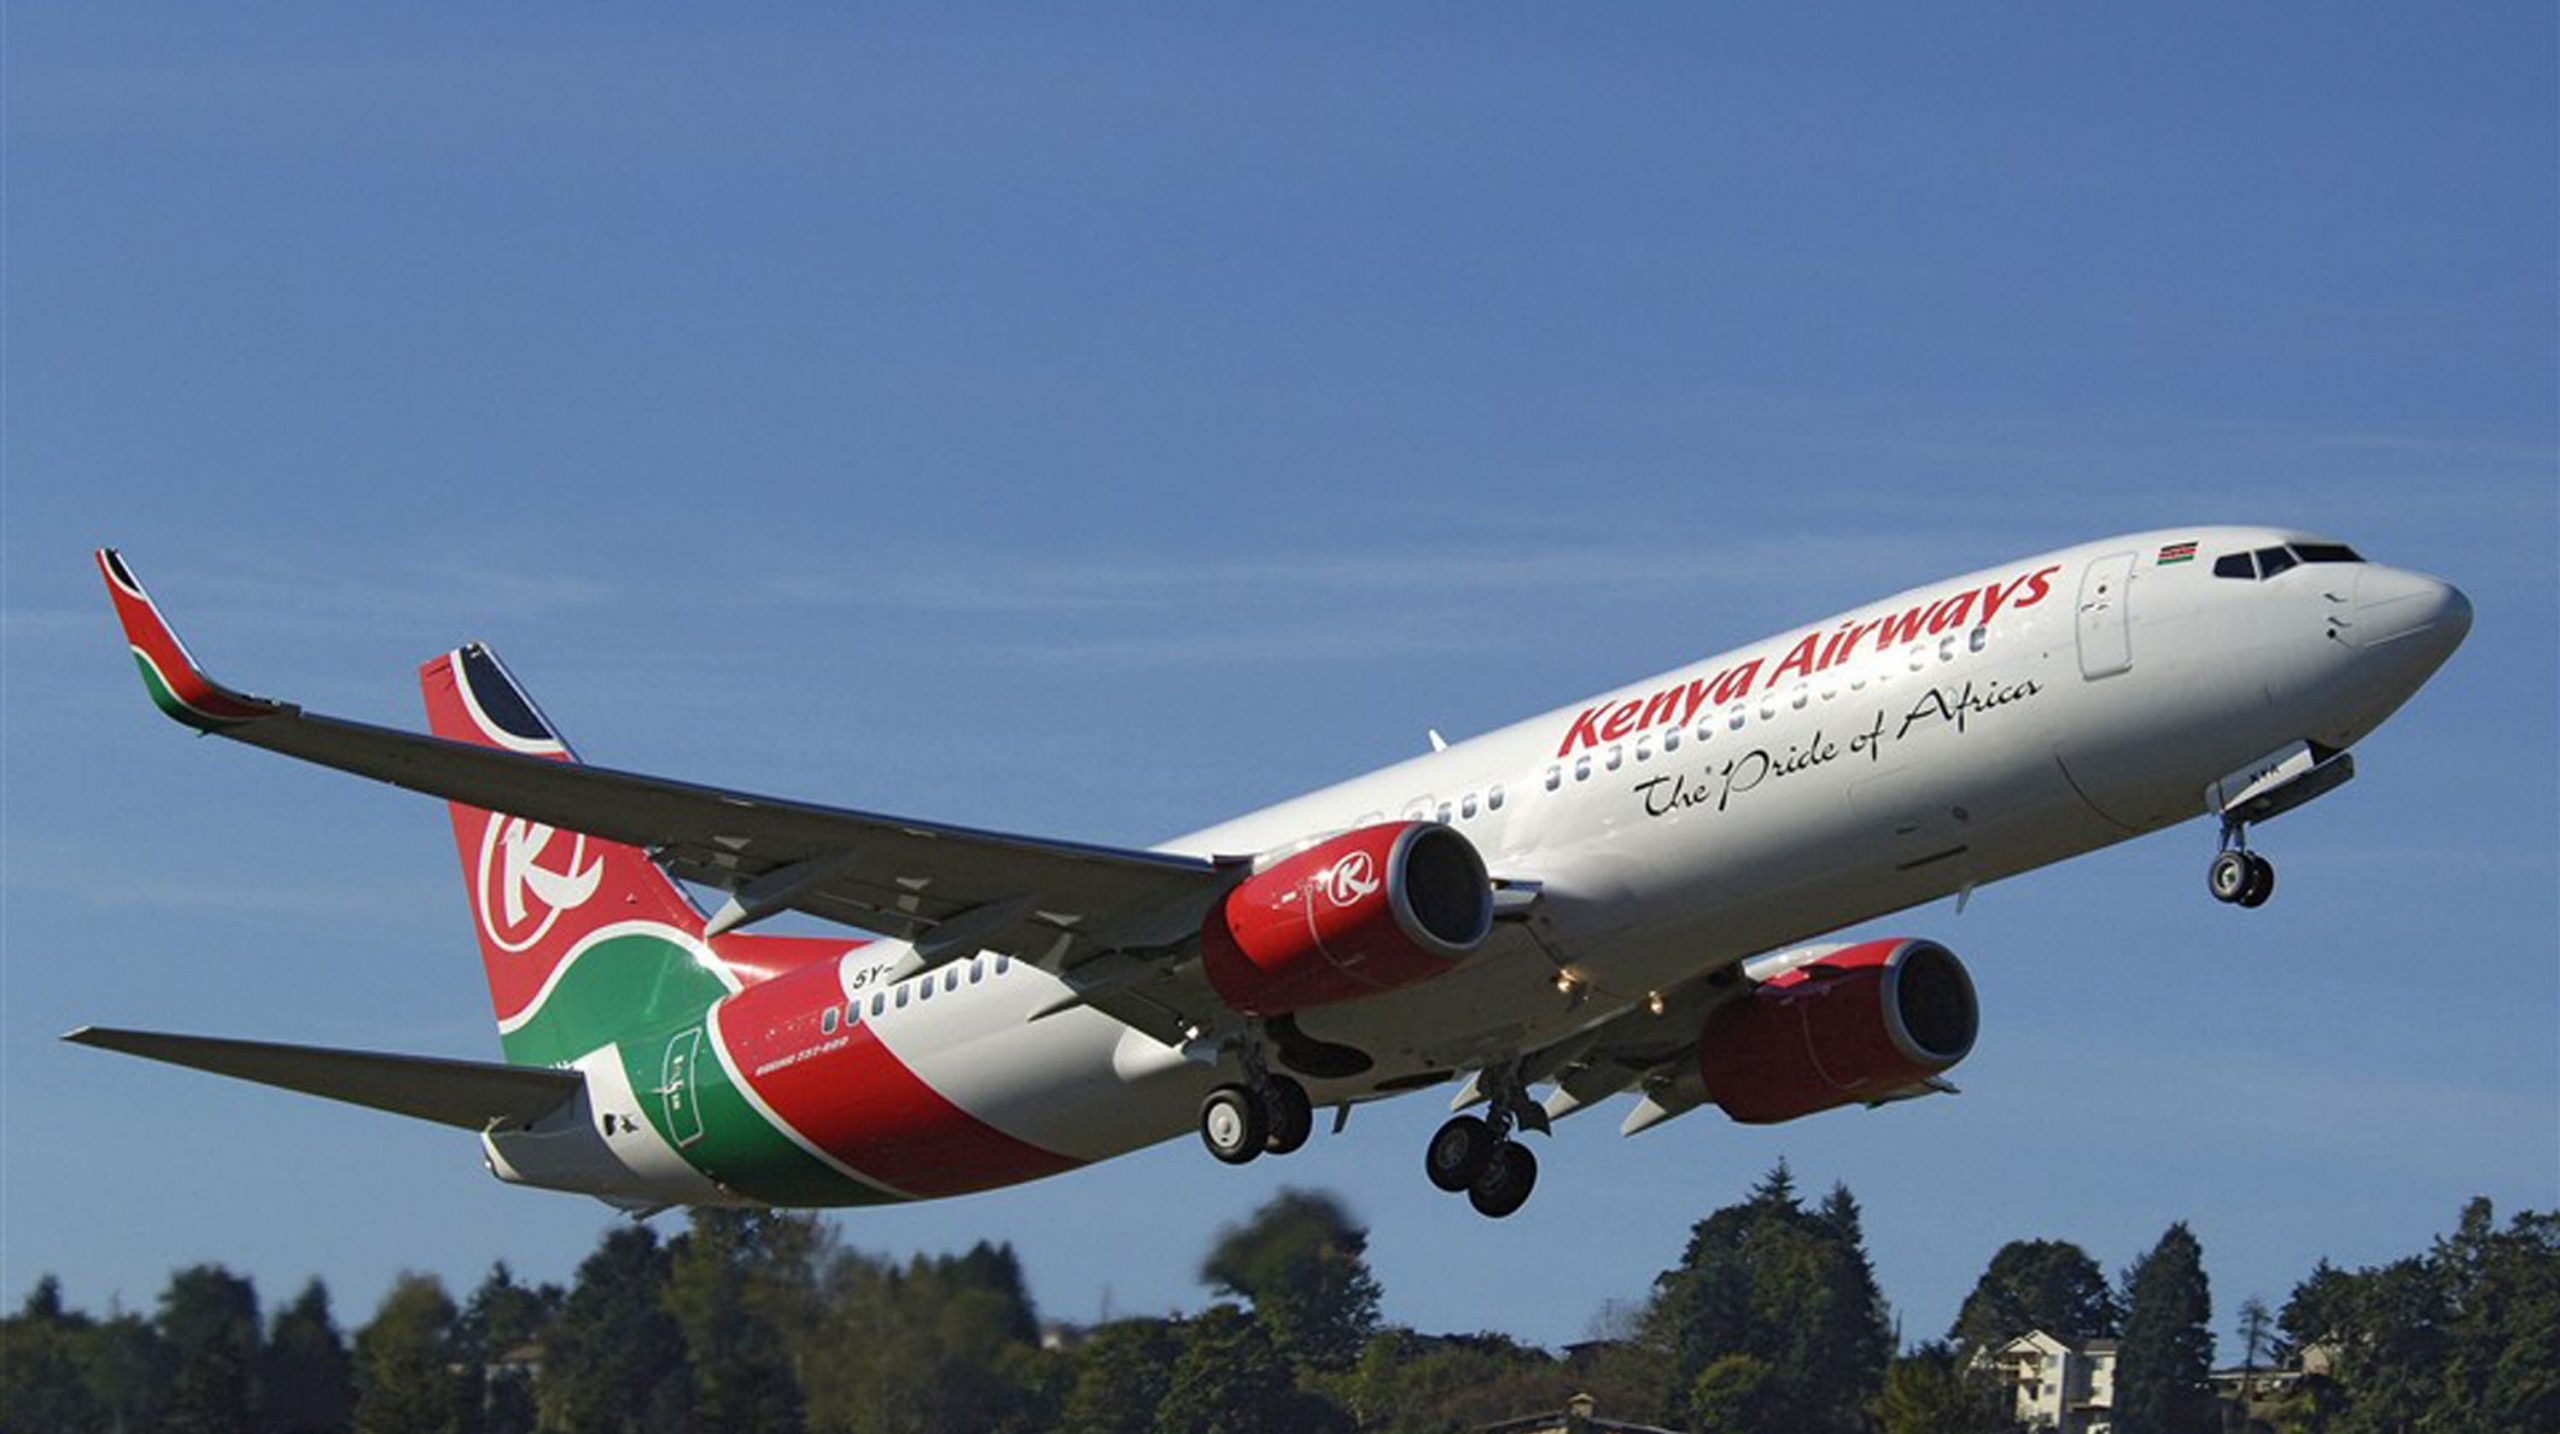 Kenya-Airways